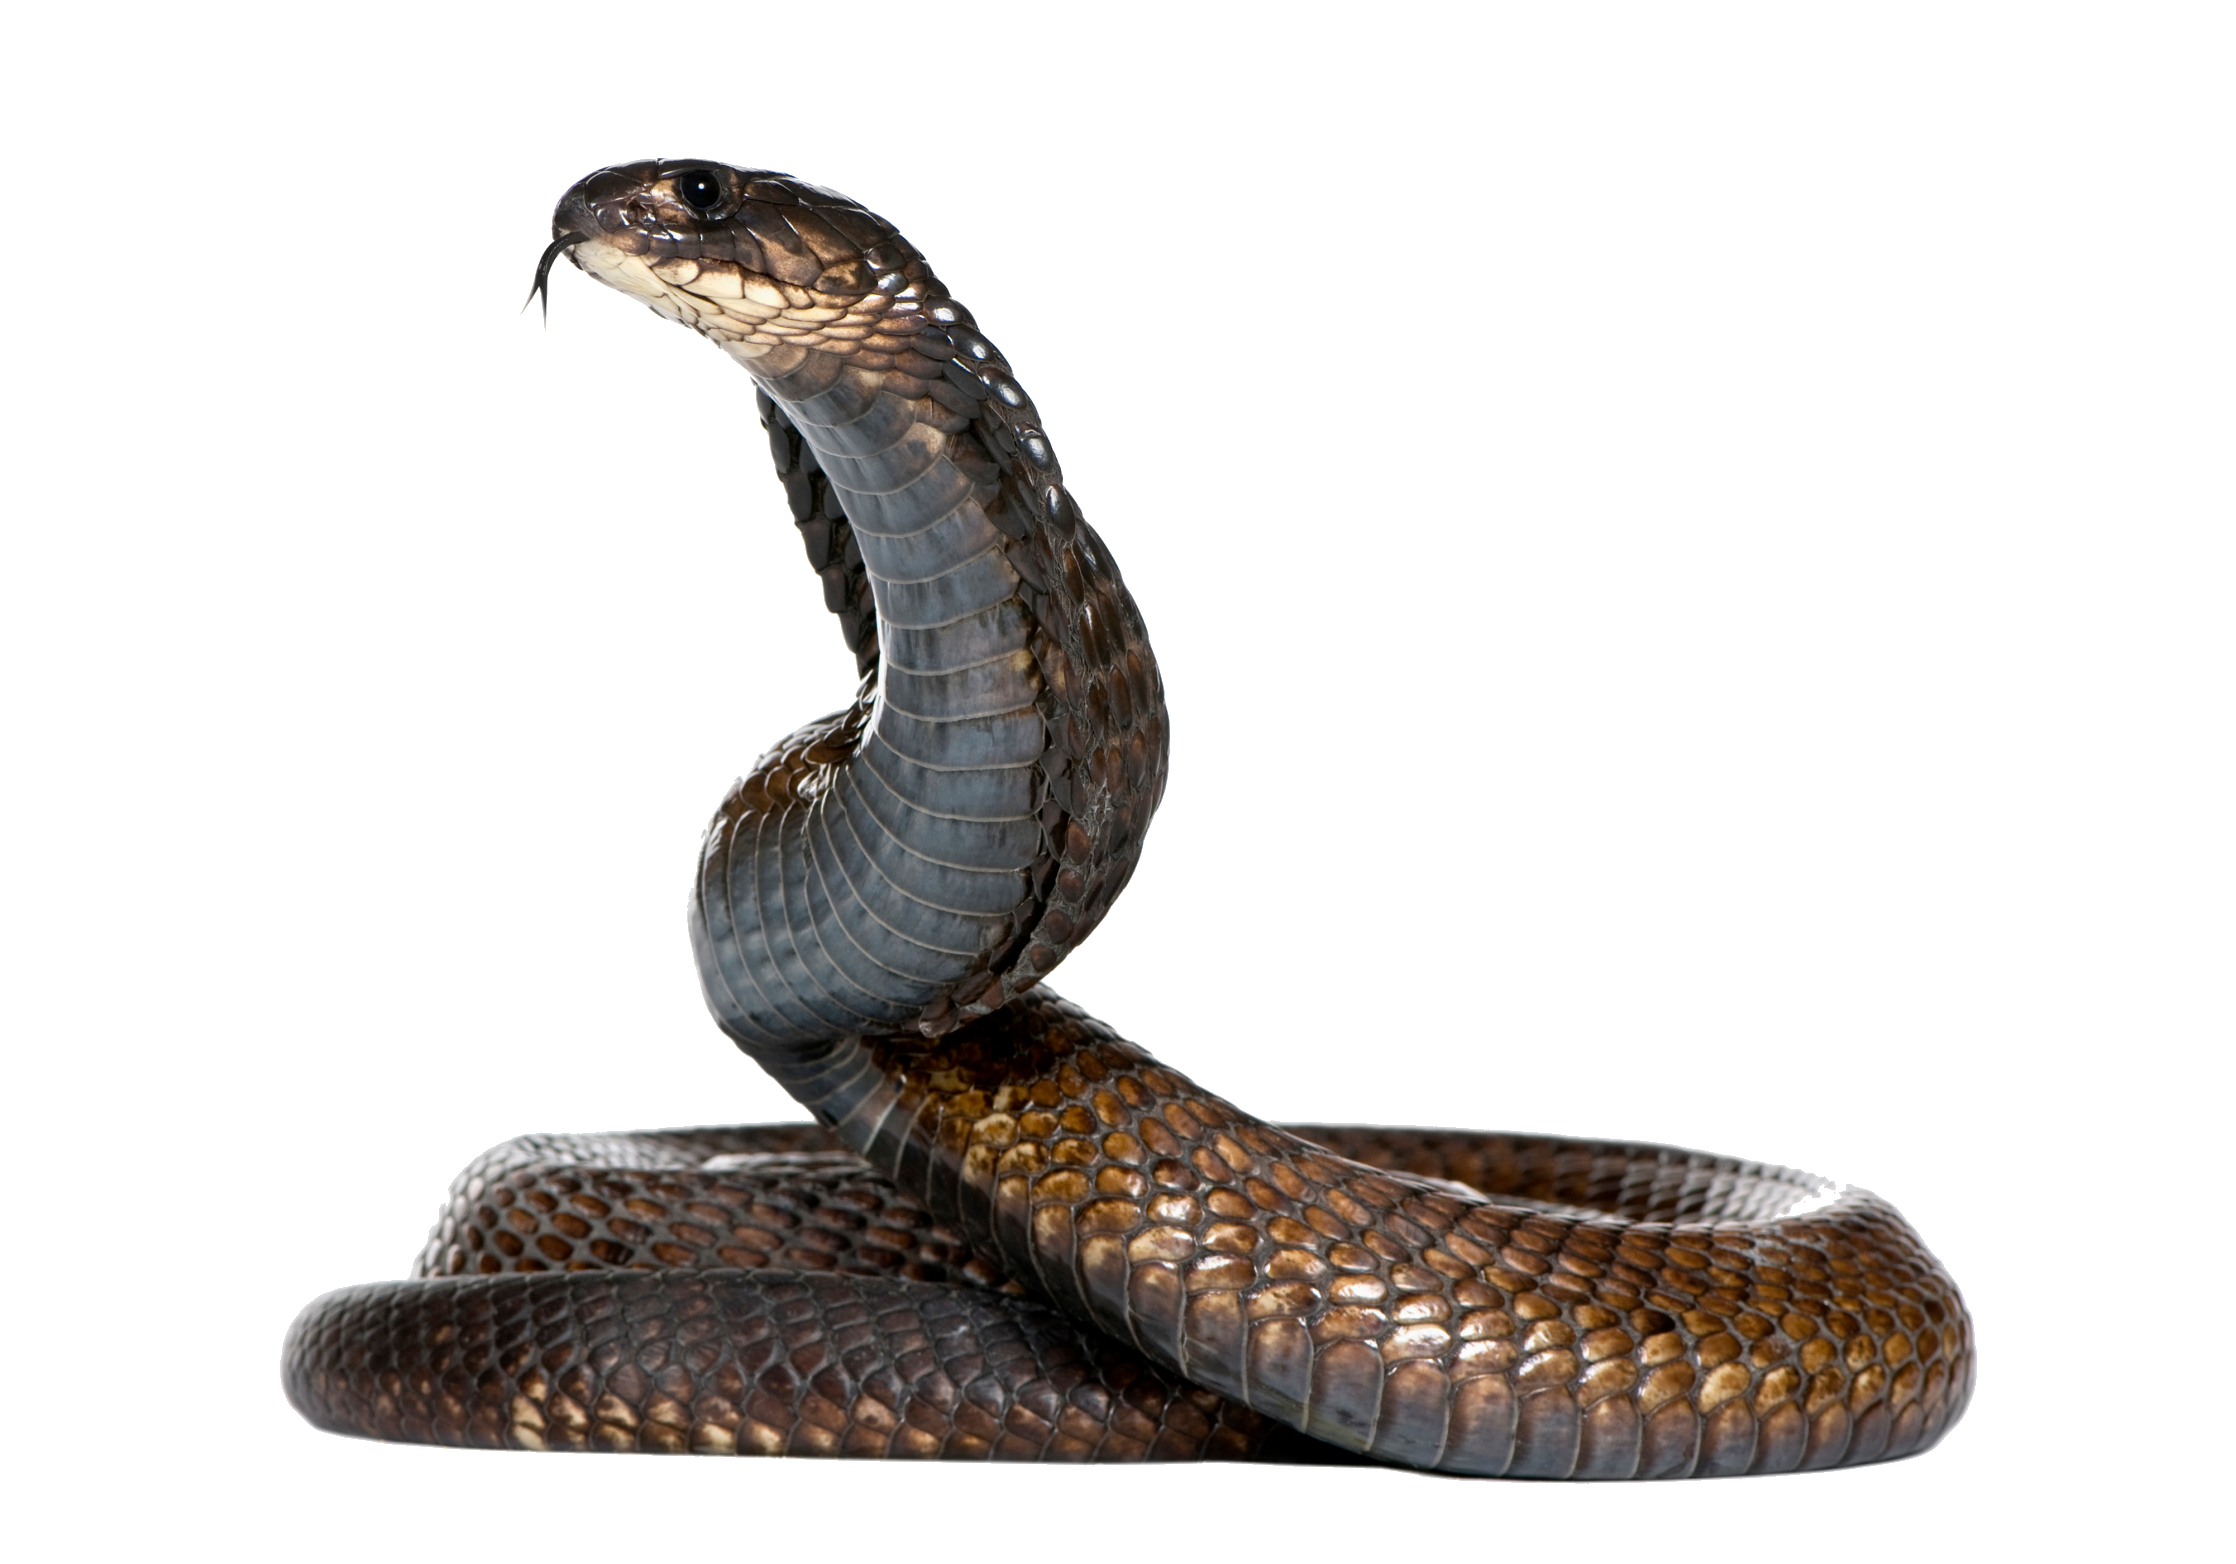 Dangerous Black Snake